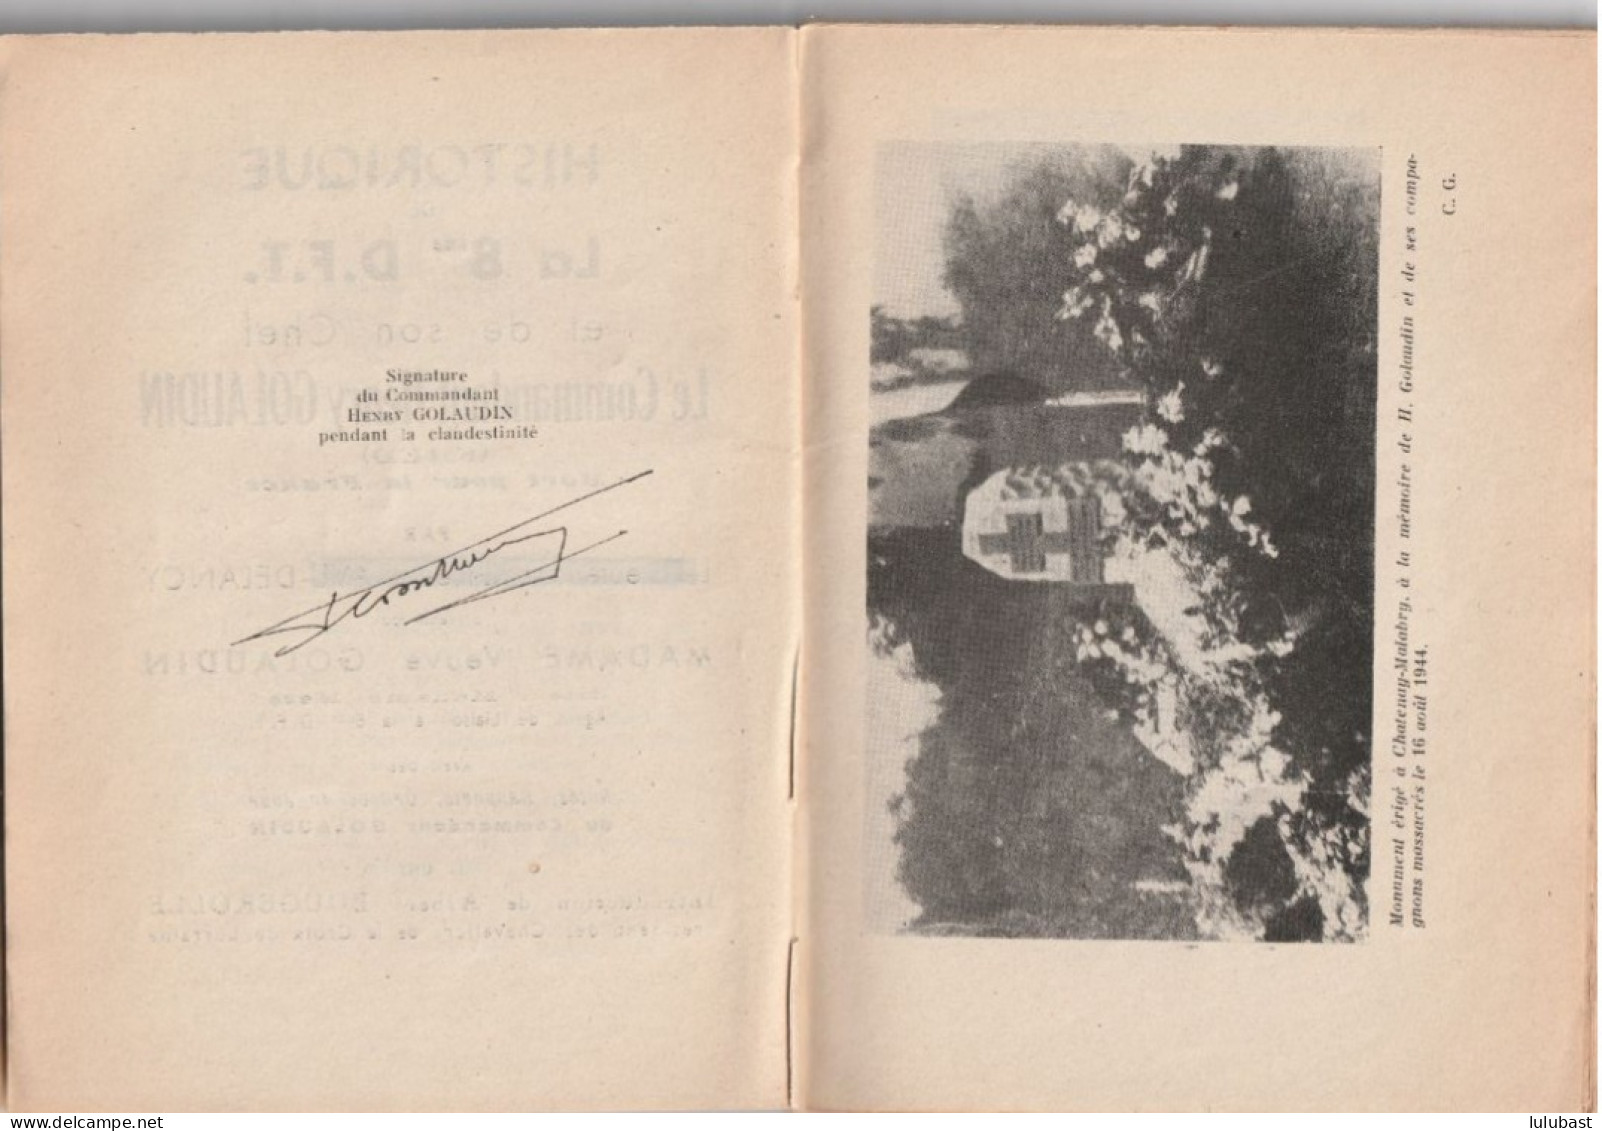 Historique De La 8ème D.F.T. - Son Chef Le Commandant H. GOLAUDIN. Dédicacé Par La Veuve - Chatenay-Malabry. - Guerre 1939-45